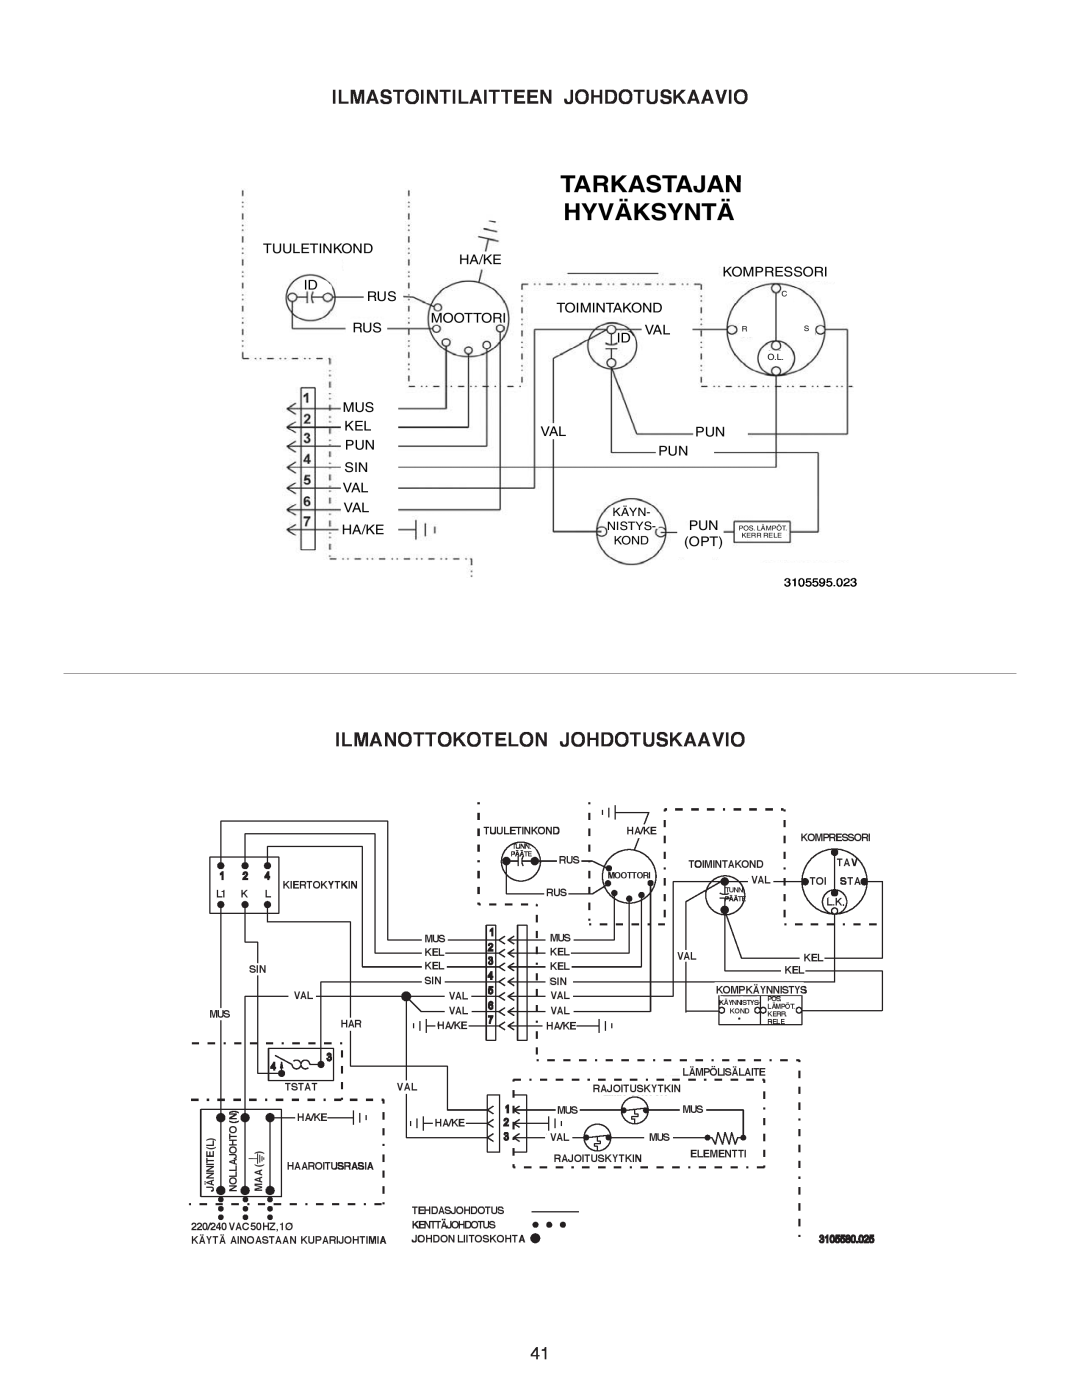 Dometic B3200 manual Hyväksyntä, Ilmastointilaitteen Johdotuskaavio, Tarkastajan, Ilmanottokotelon Johdotuskaavio 